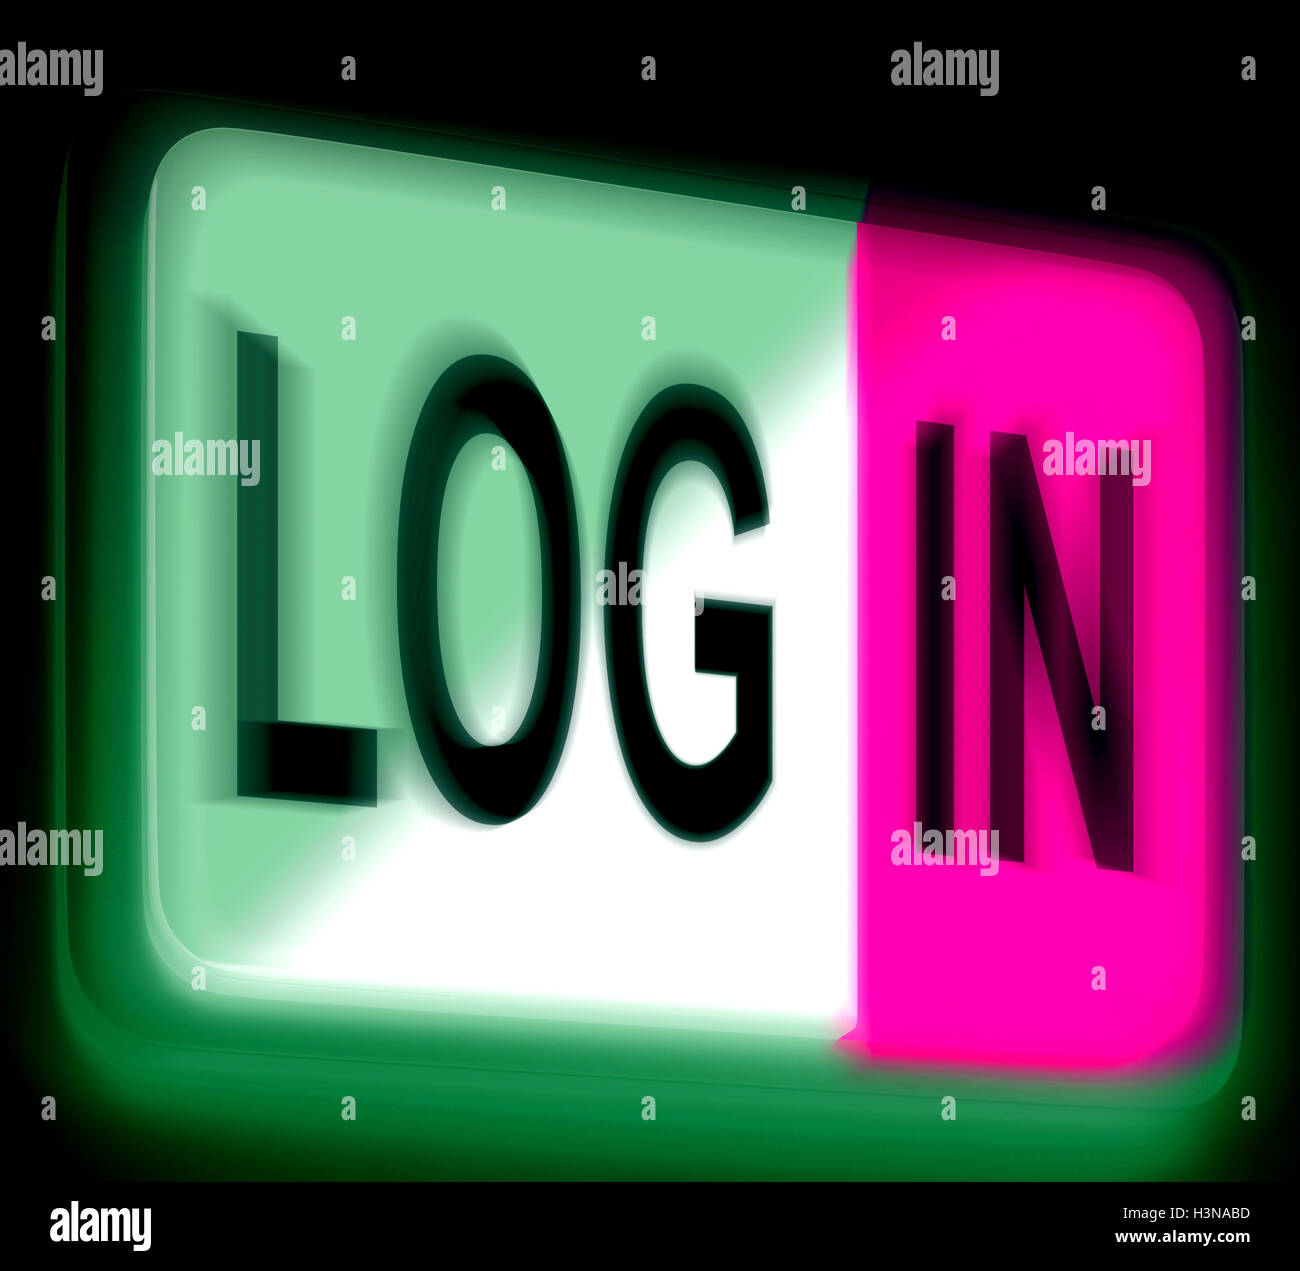 Accedi Login segno mostra Accedi Online Foto Stock